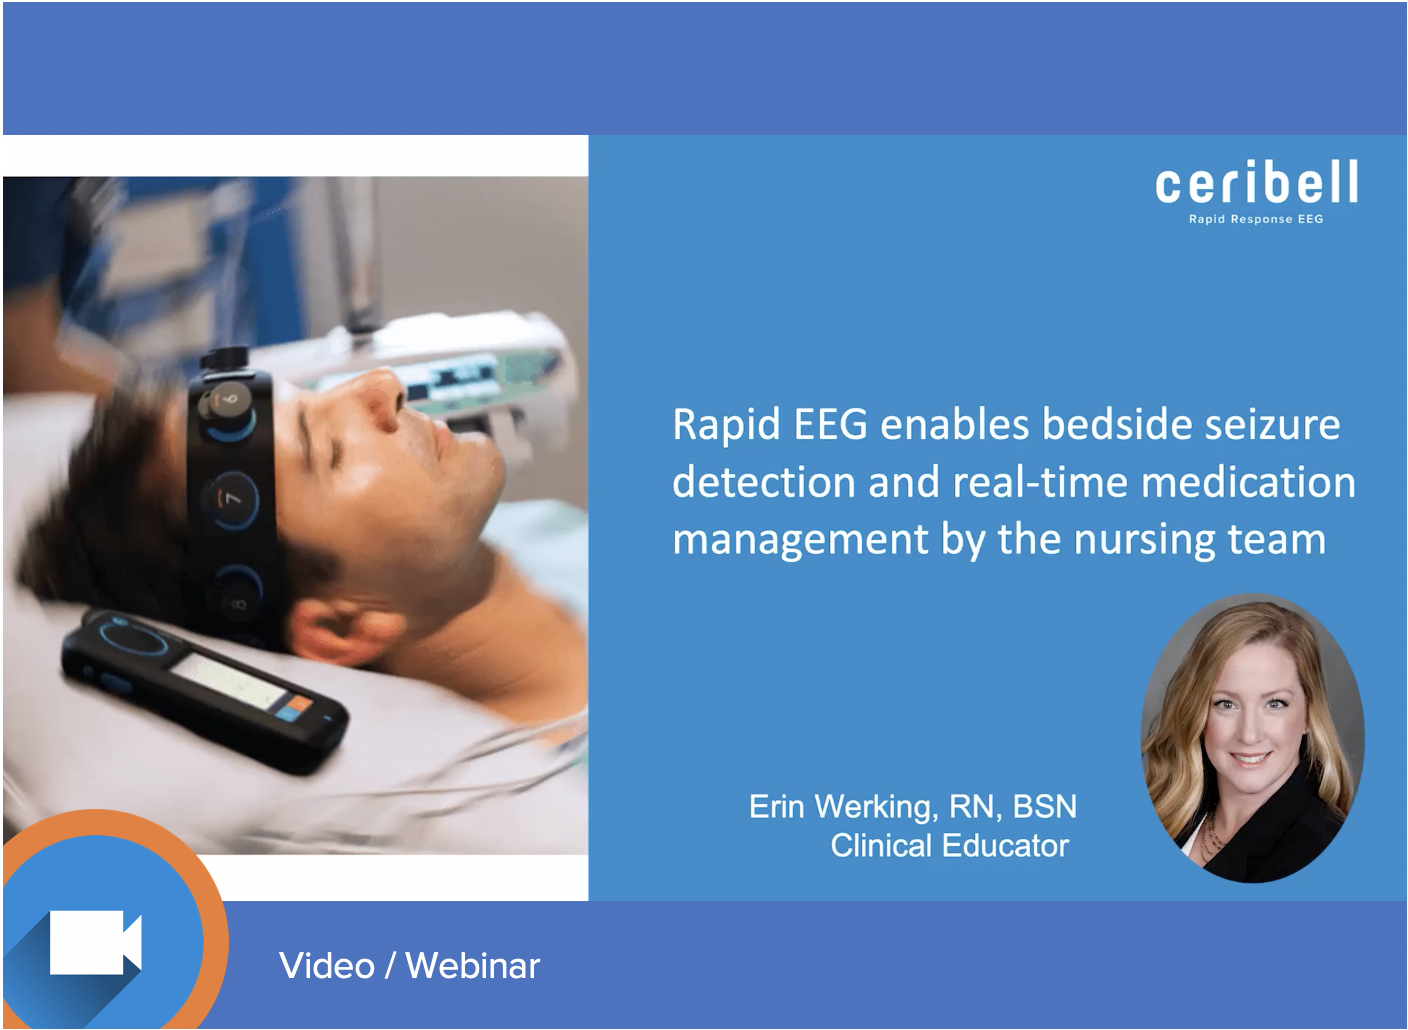 Ceribell Rapid EEG Enables Bedside Seizure Detection and Medication Management by Nursing Team